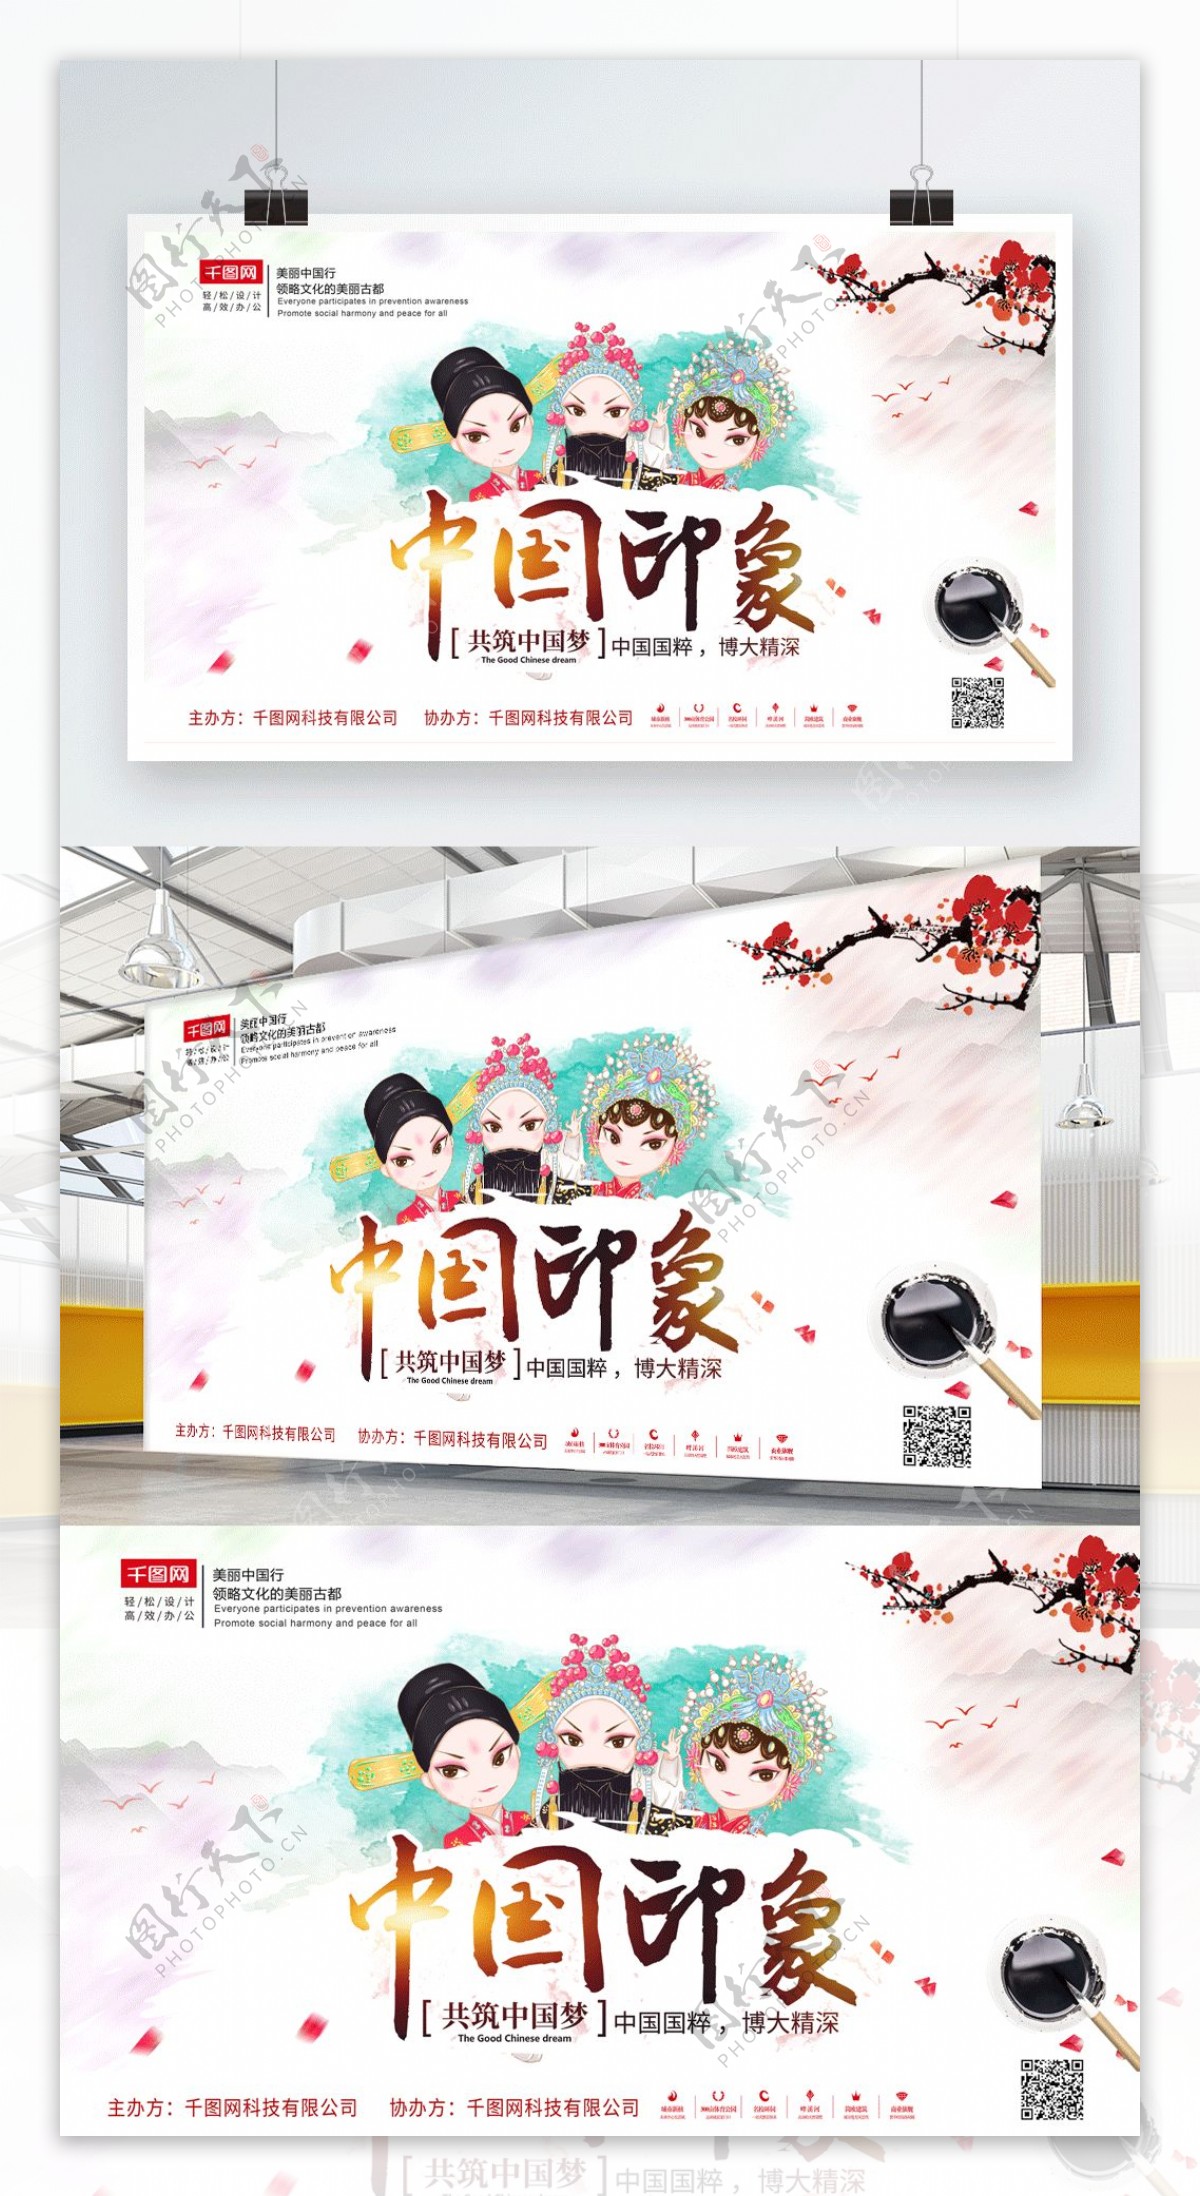 水墨彩绘中国印象中国传统文化宣传海报展板